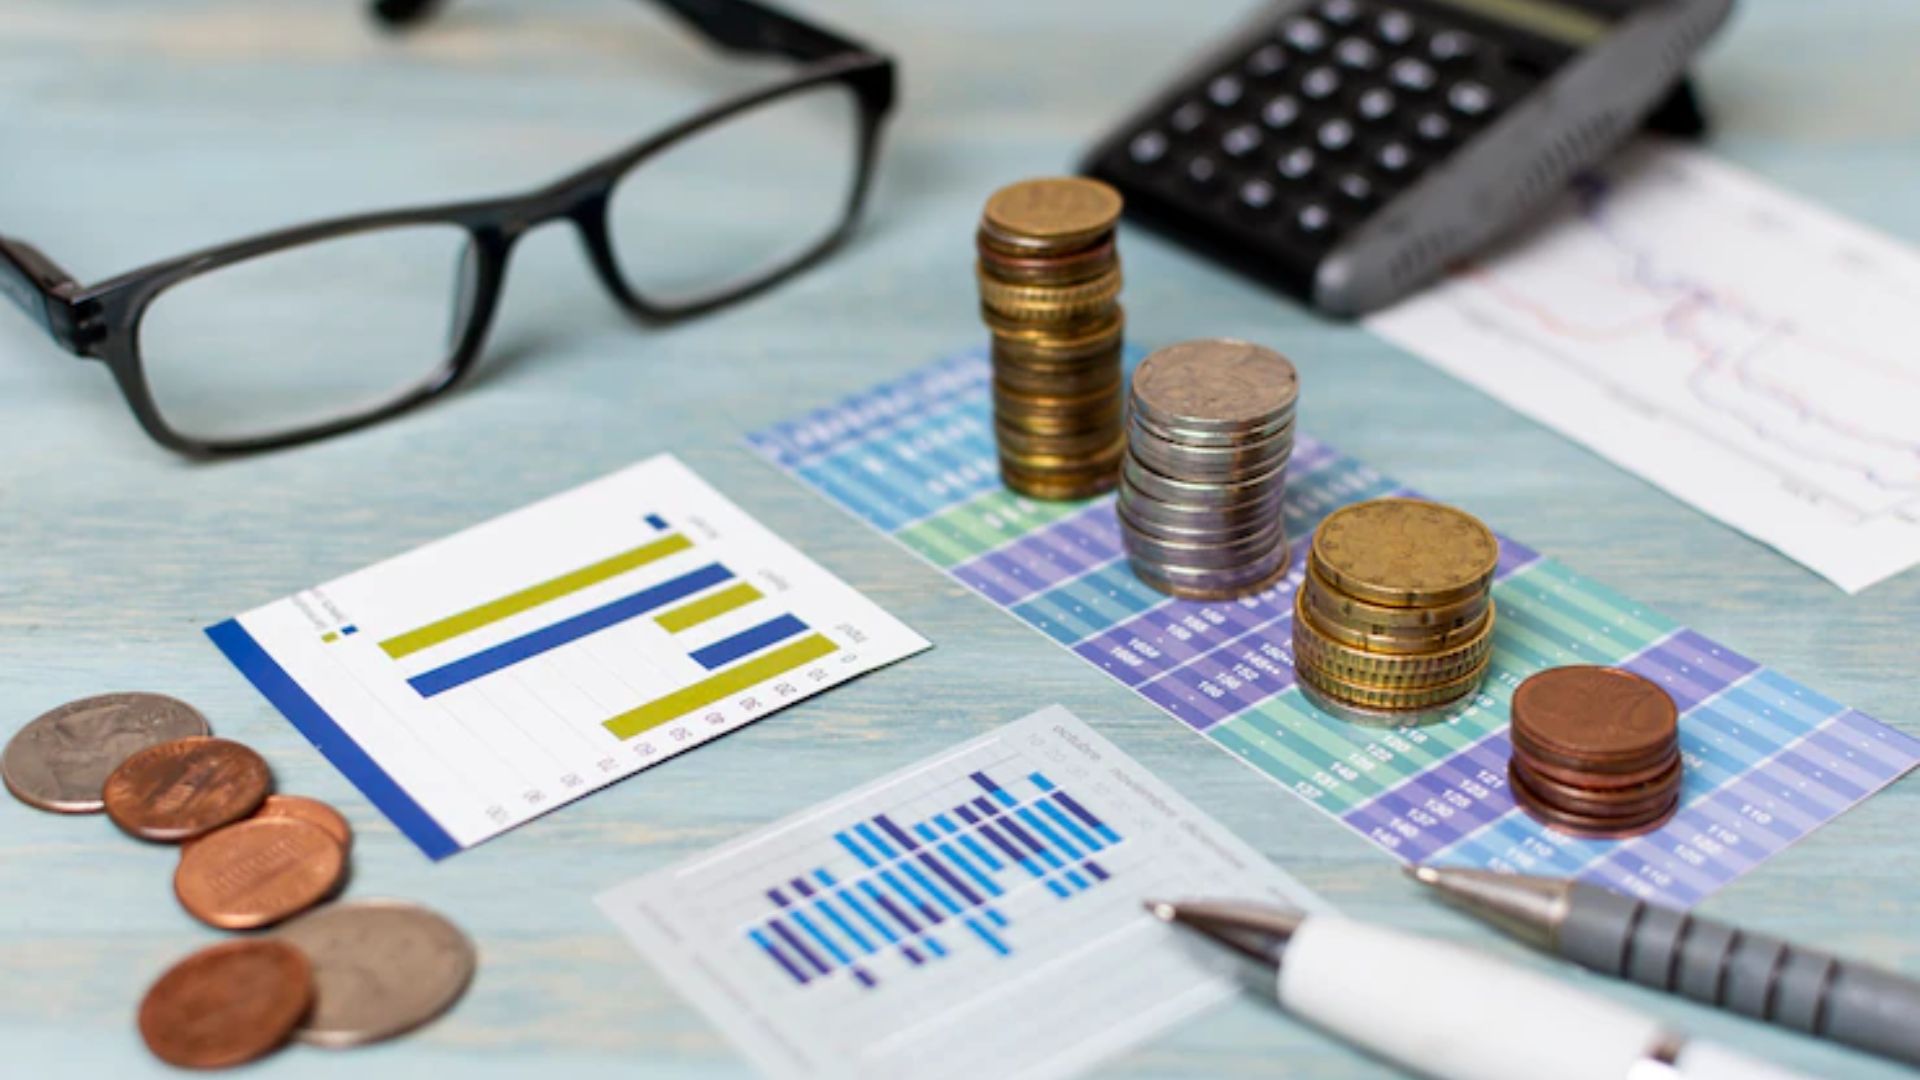 Objetos para planejamento financeiro com calculadora, planilhas, óculos, moedas, dentre outros